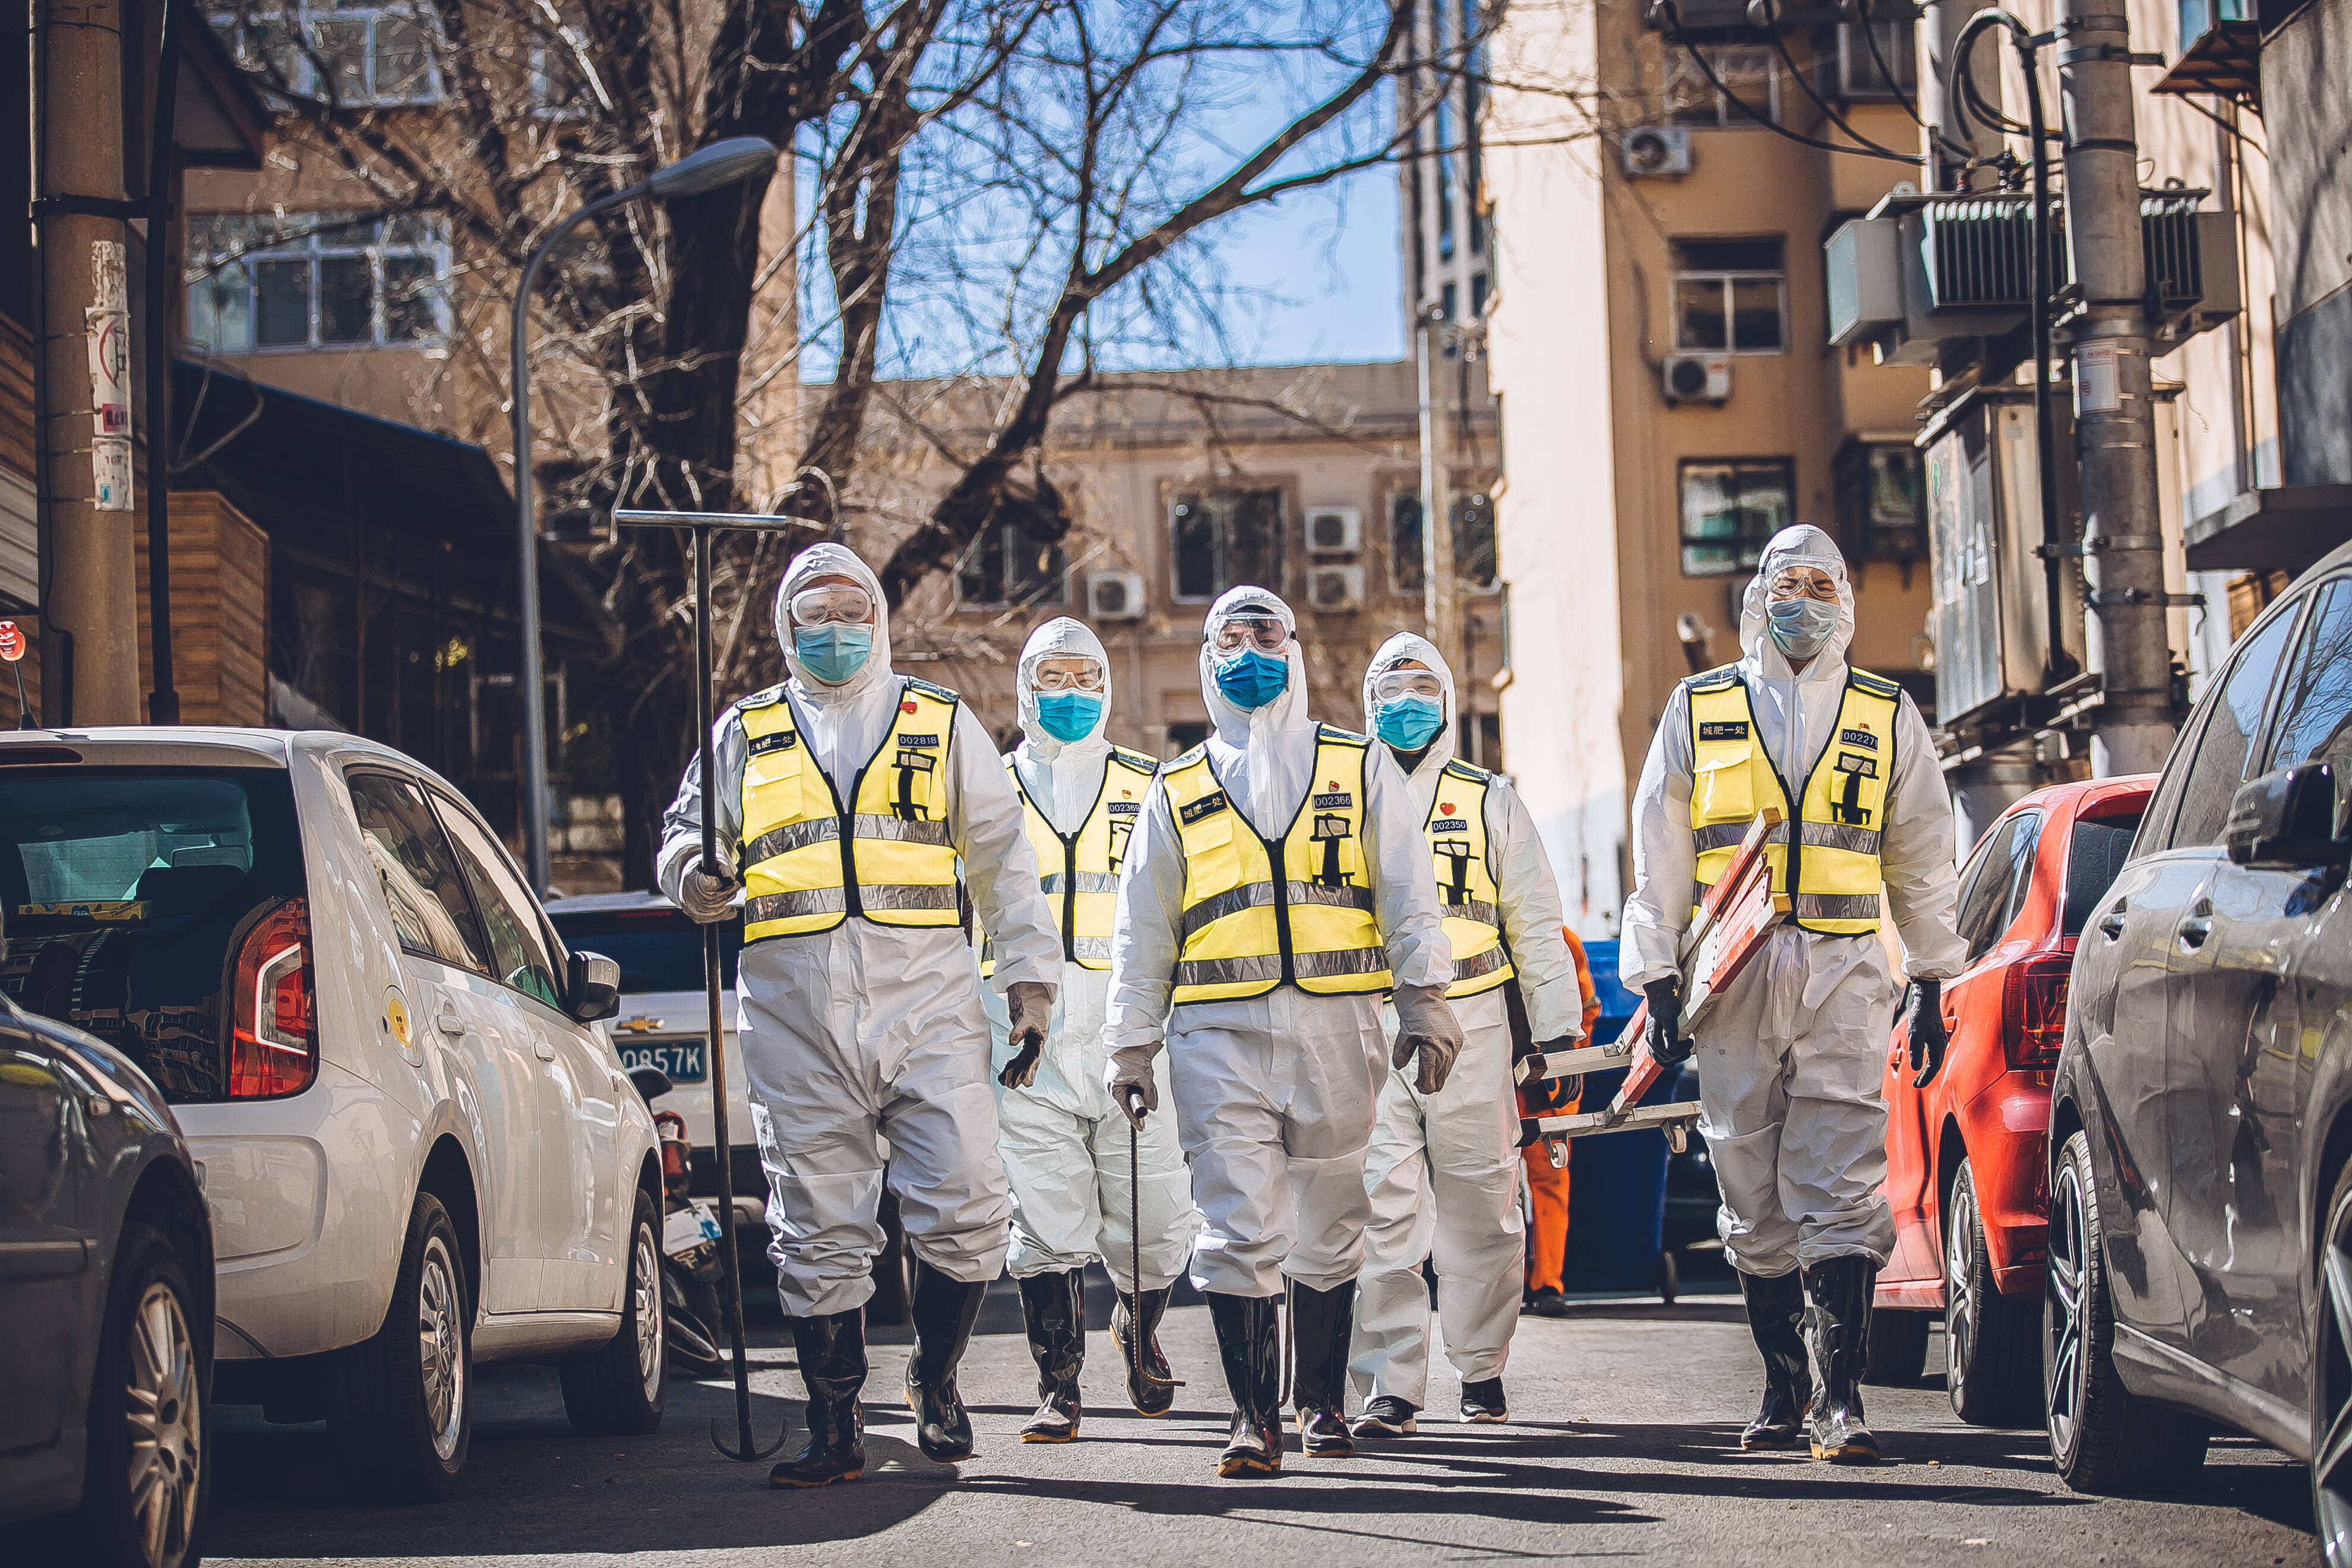 每周至少开展一轮核酸检测 济南市城管局全面加强一线环卫保洁人员疫情防护